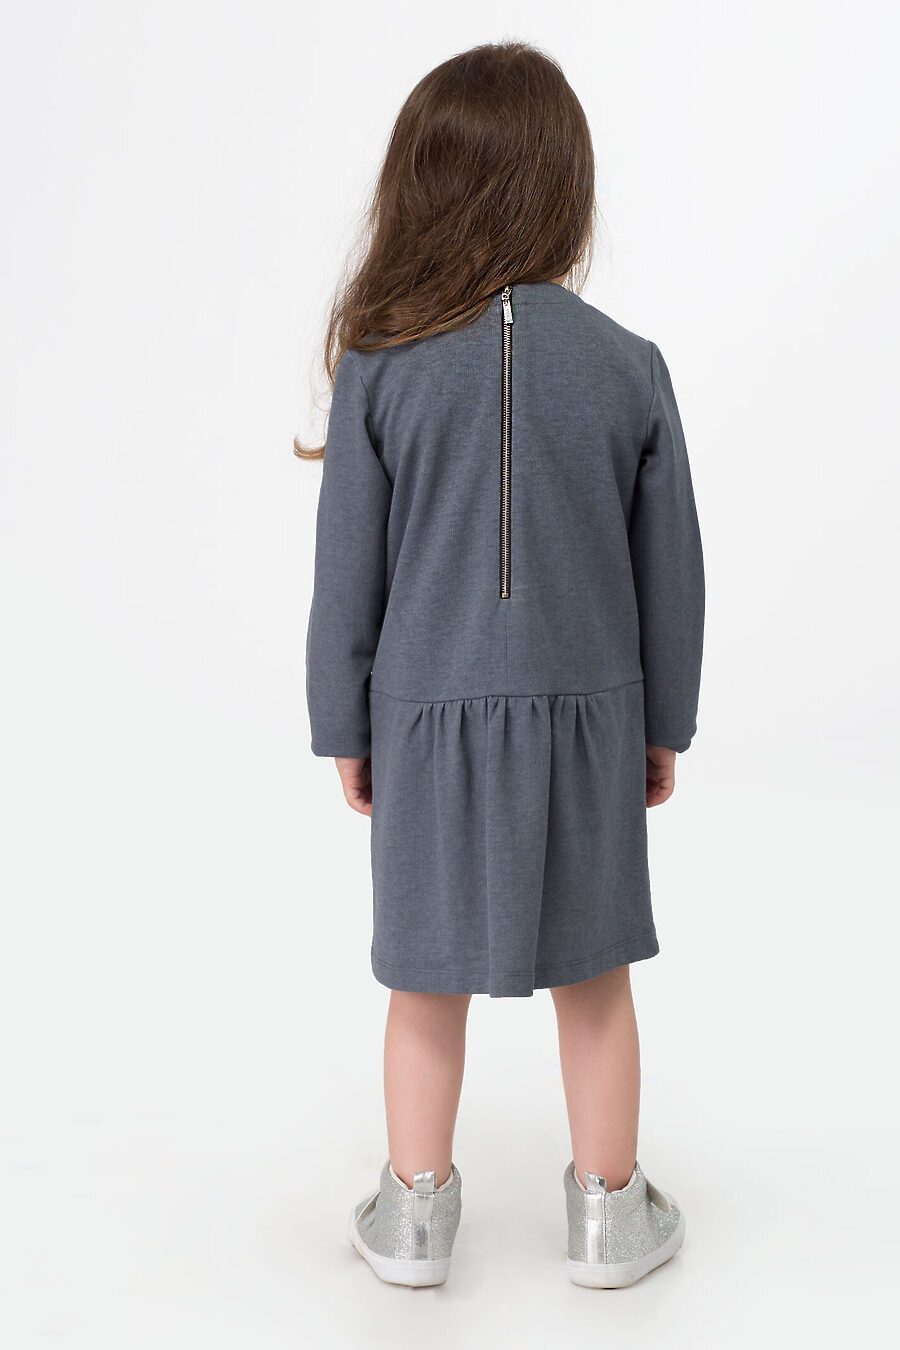 Платье для девочек PANDA 664662 купить оптом от производителя. Совместная покупка детской одежды в OptMoyo